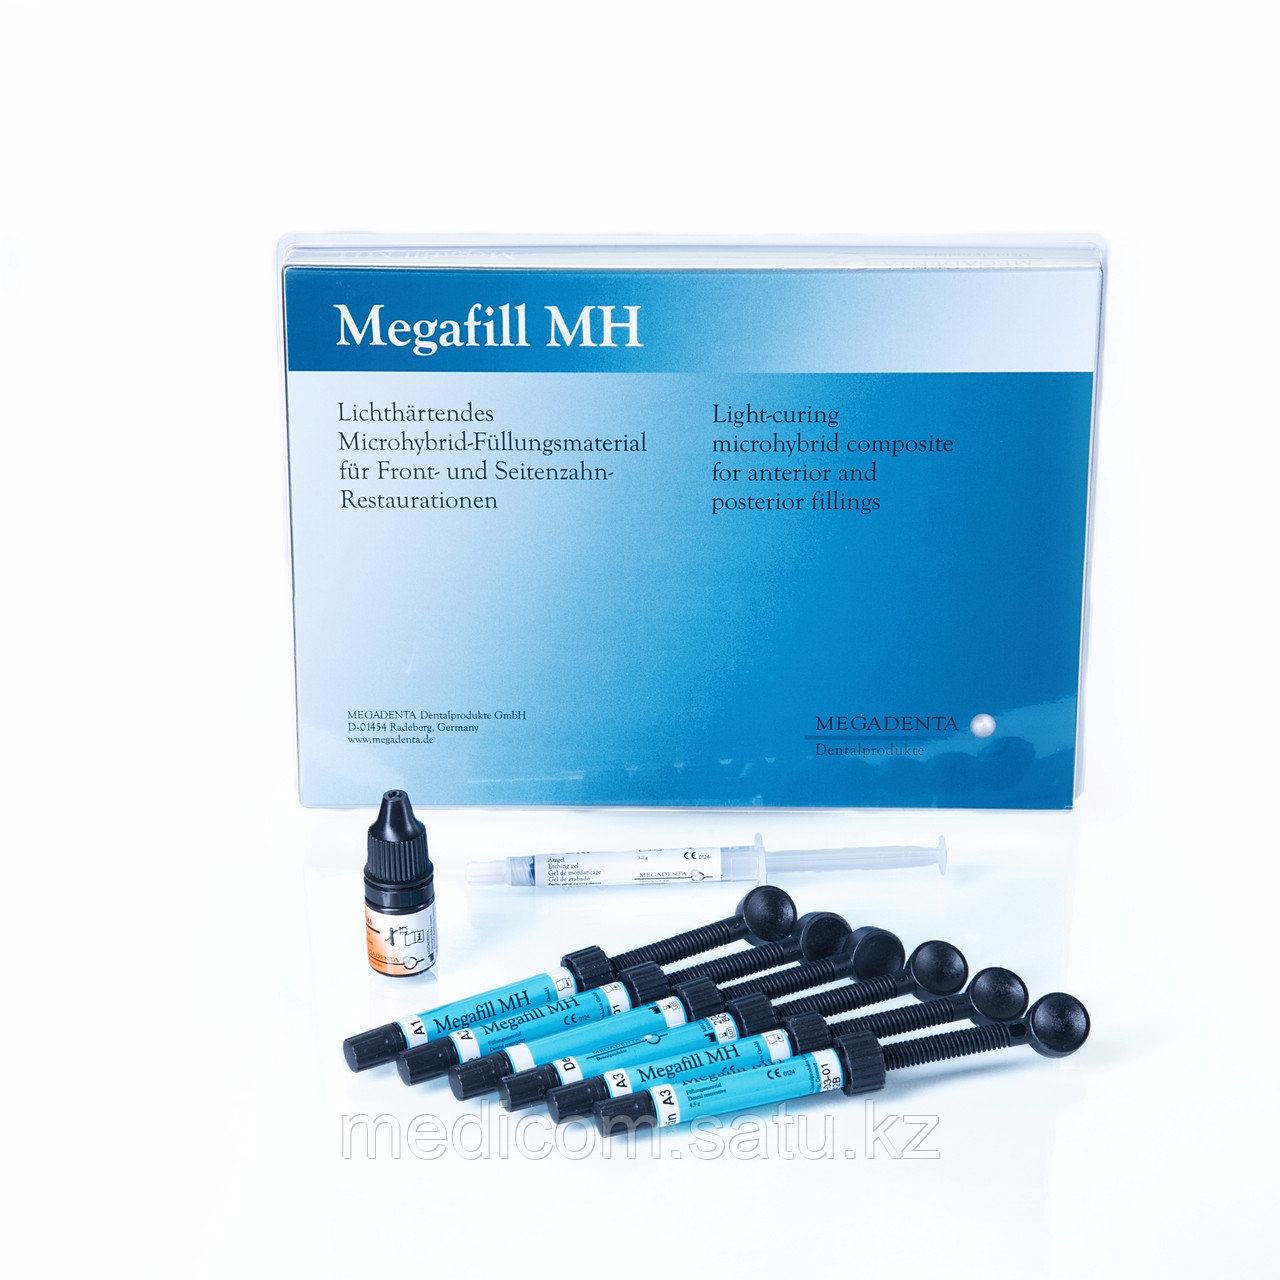 Мегафилл МН (Megafill MH) светоотверждаемый универсальный композит (Megadenta, Германия)